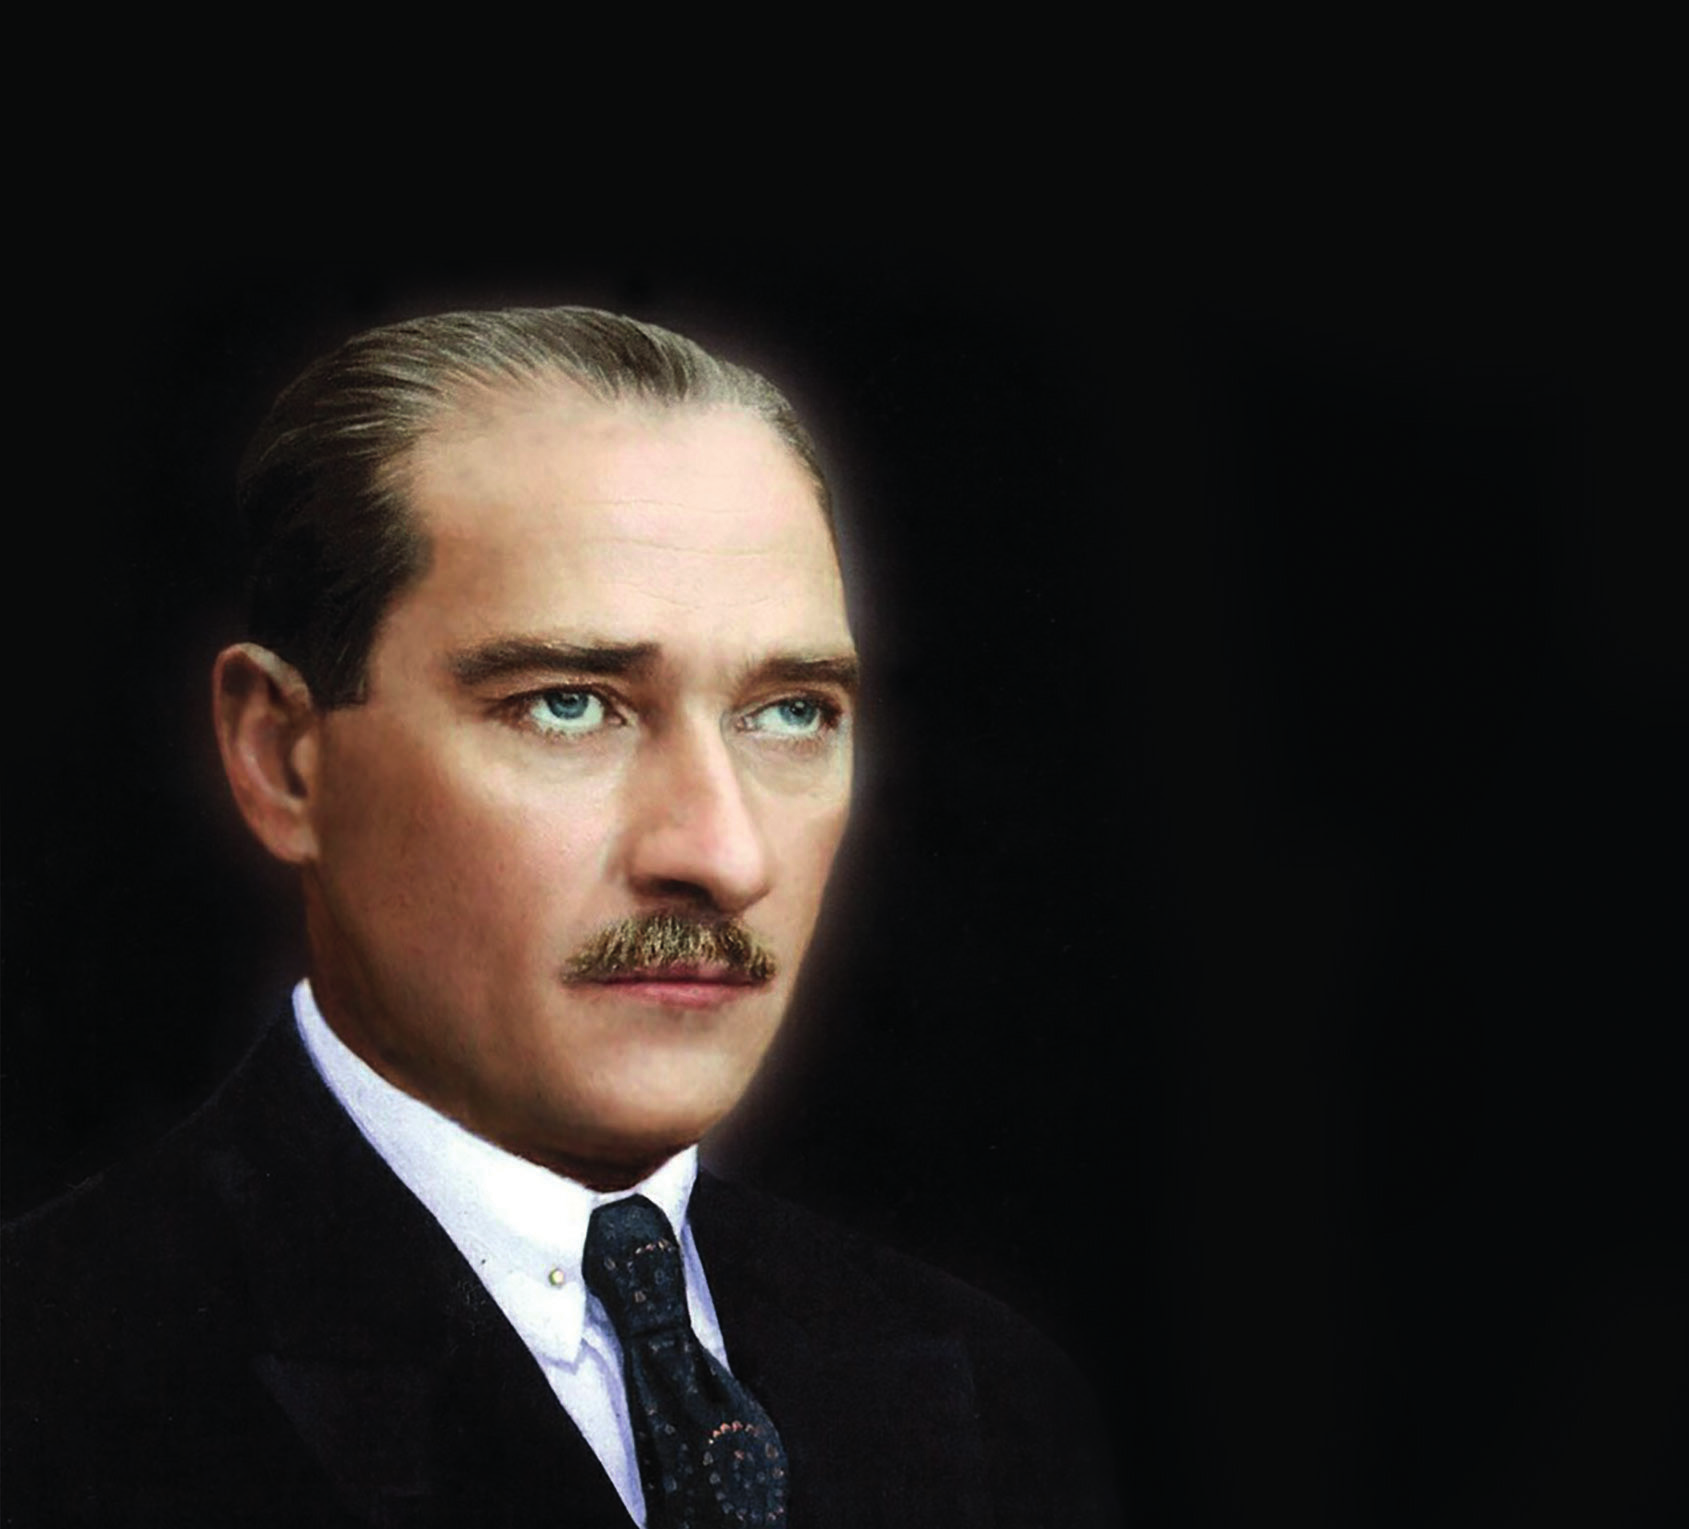 Otopsi Cengiz Özakıncı BD MART 2017 Atatürk Soyadı Konusunda Uydurmalar ve Gerçekler 1932 yılında Atatürk'ün bir Türk